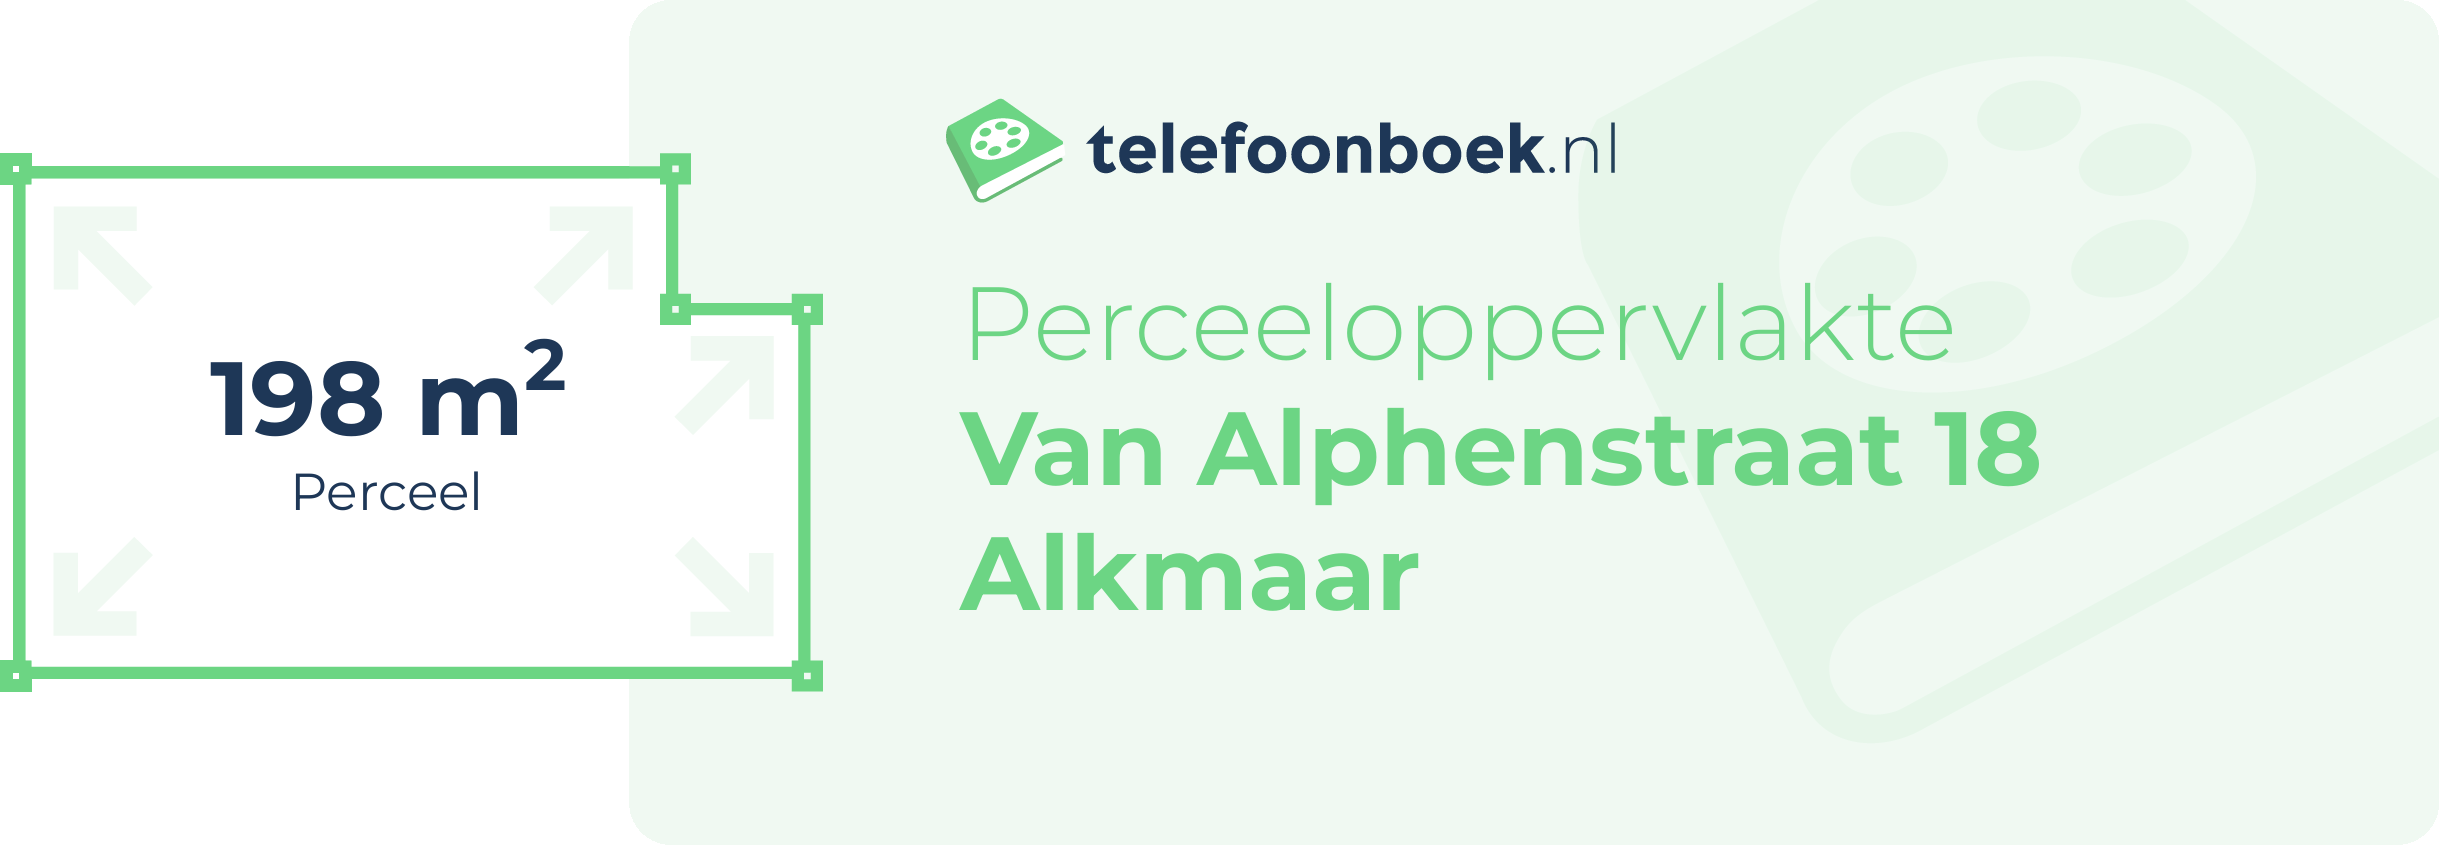 Perceeloppervlakte Van Alphenstraat 18 Alkmaar